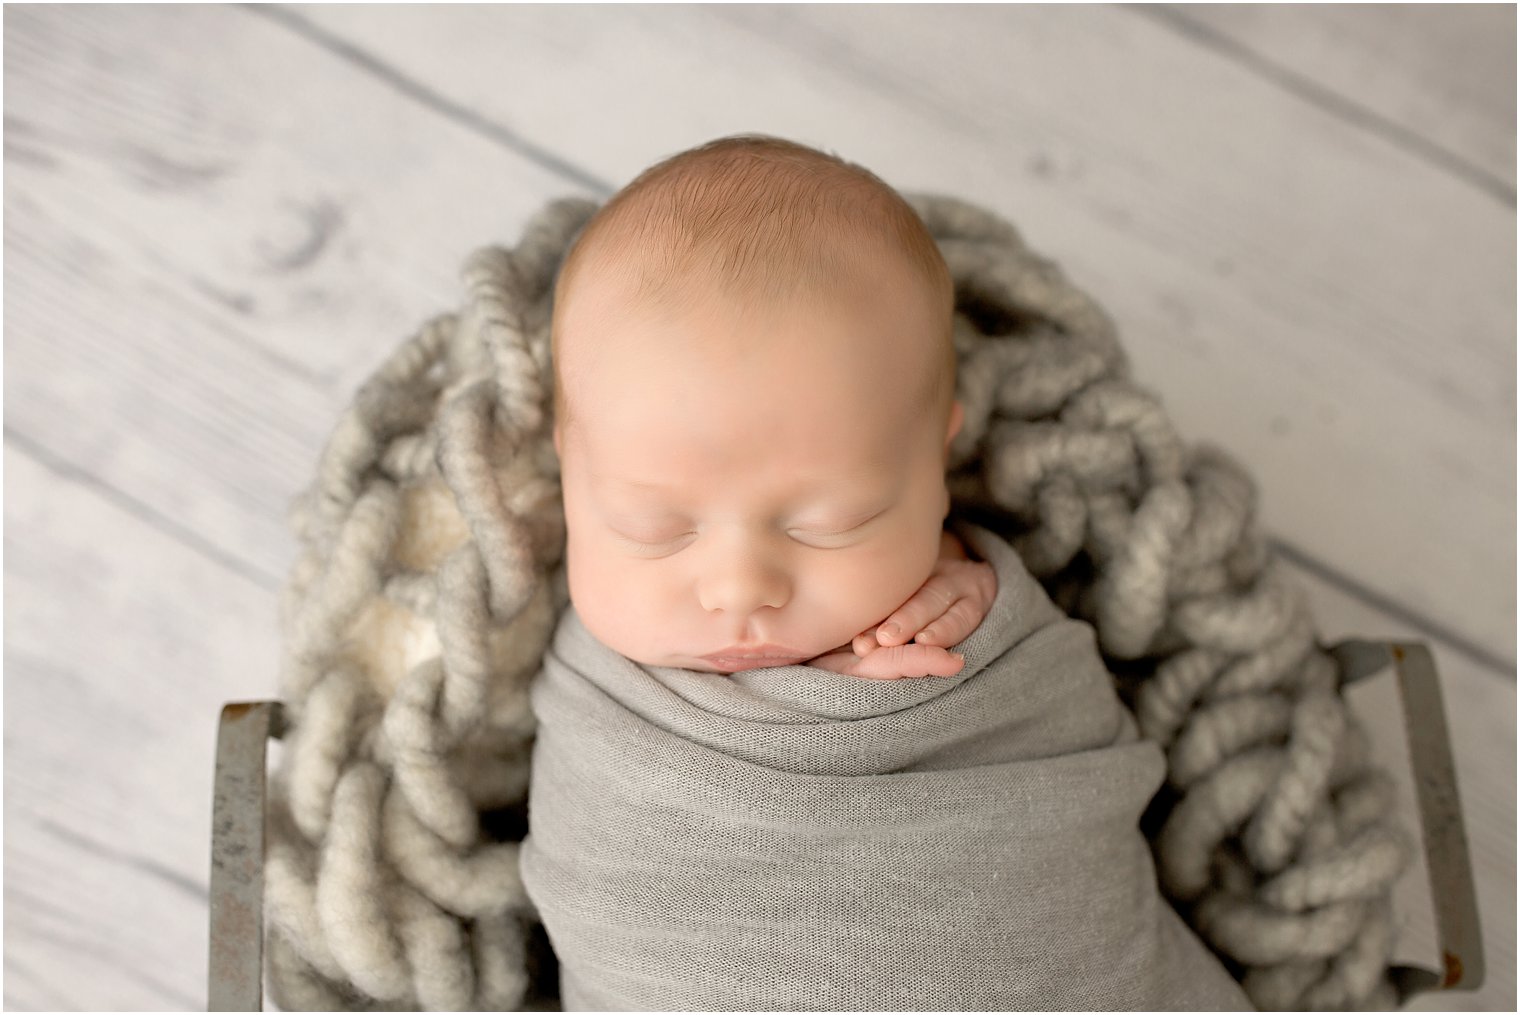 Newborn boy in gray blanket and wire basket